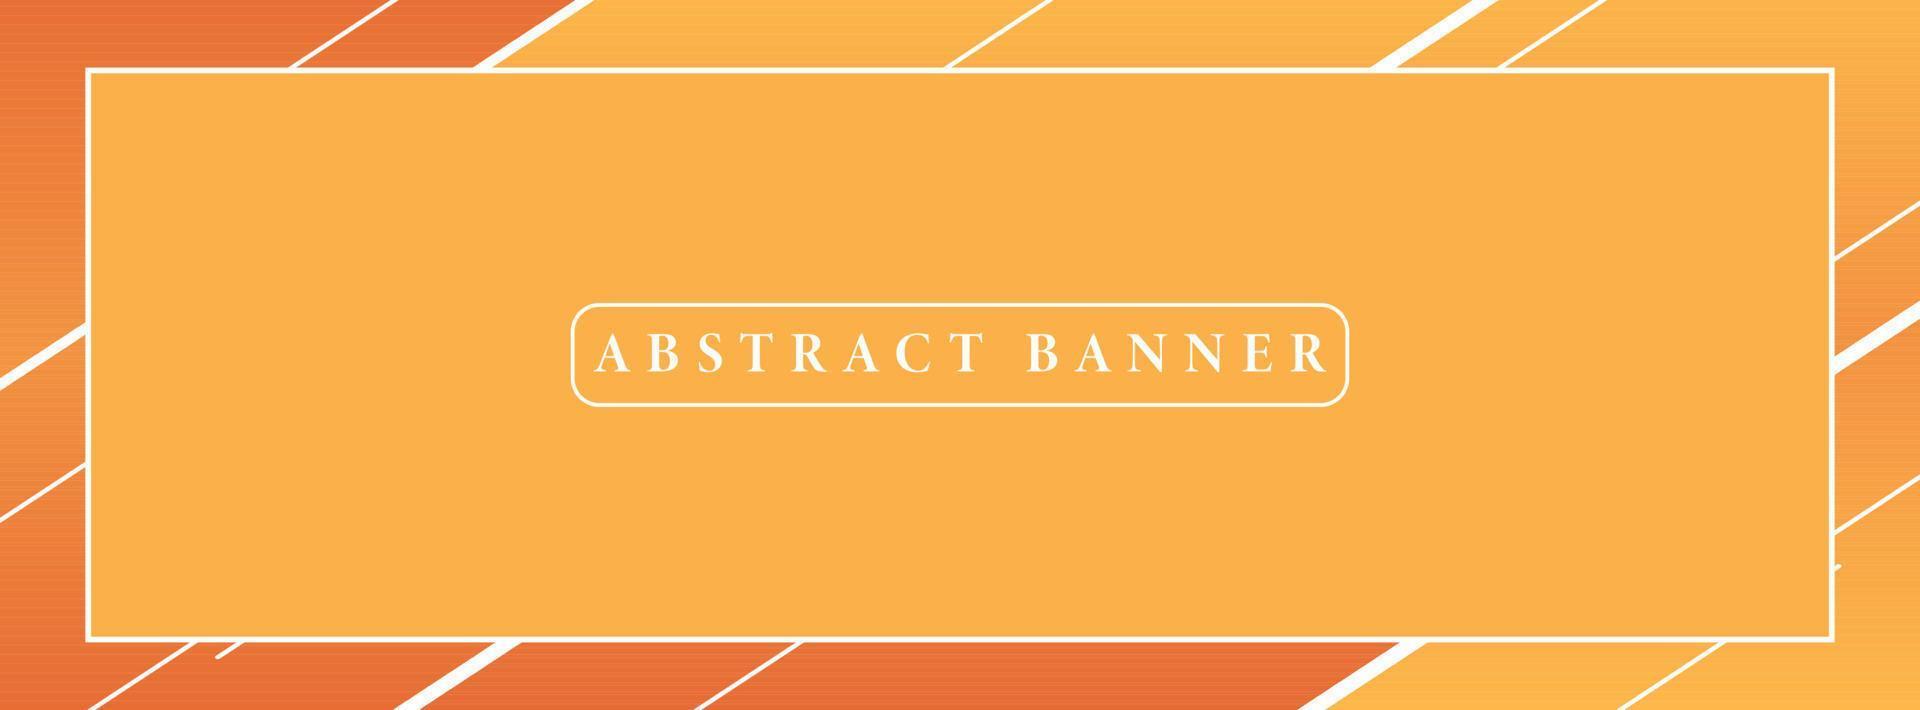 banner abstracto ancho creativo creado con formas geométricas simples vector